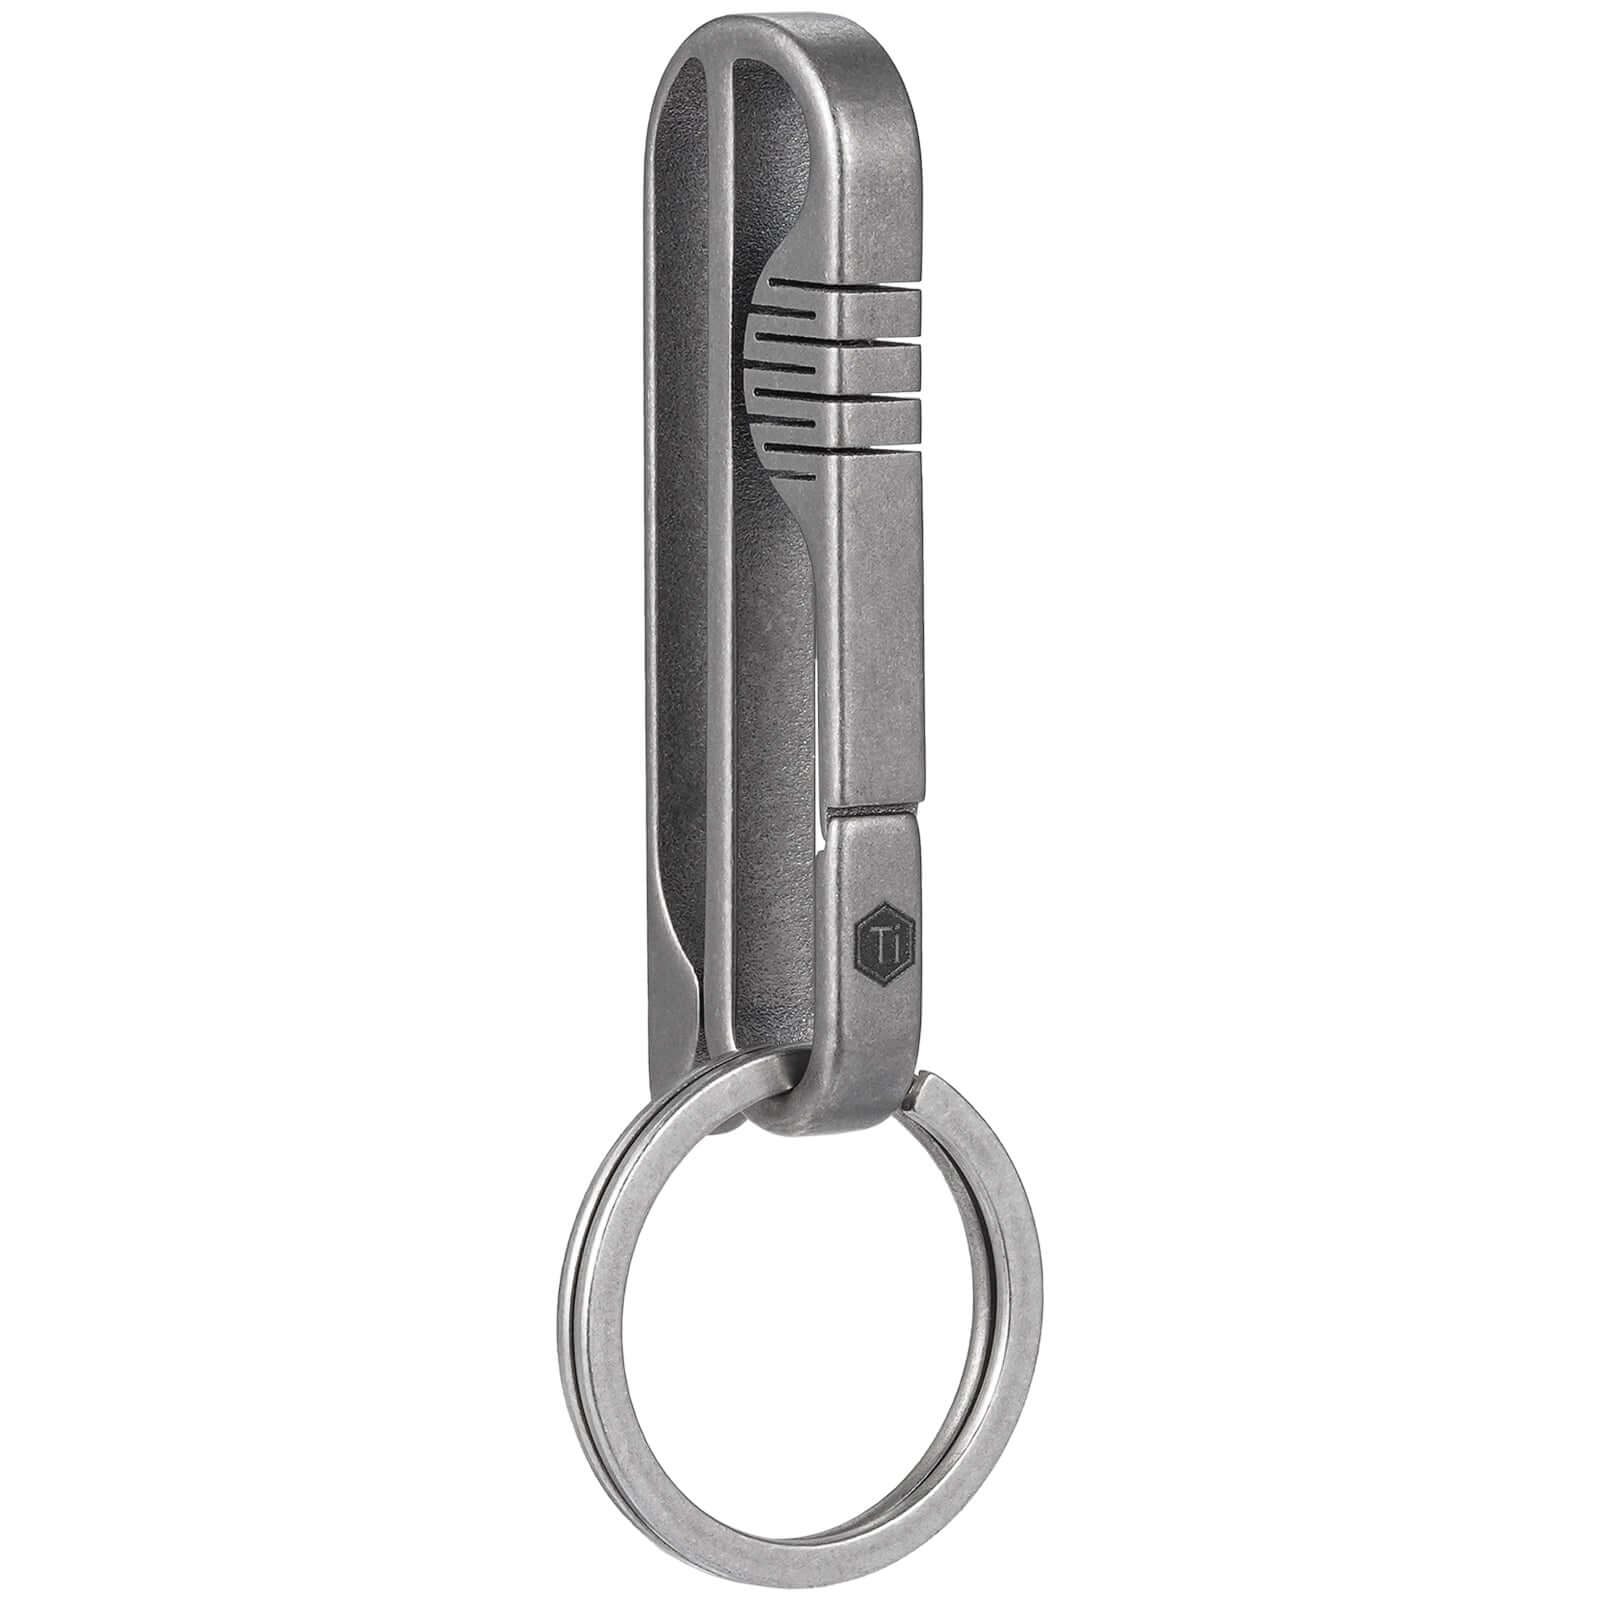 Belt Loop Key Ring